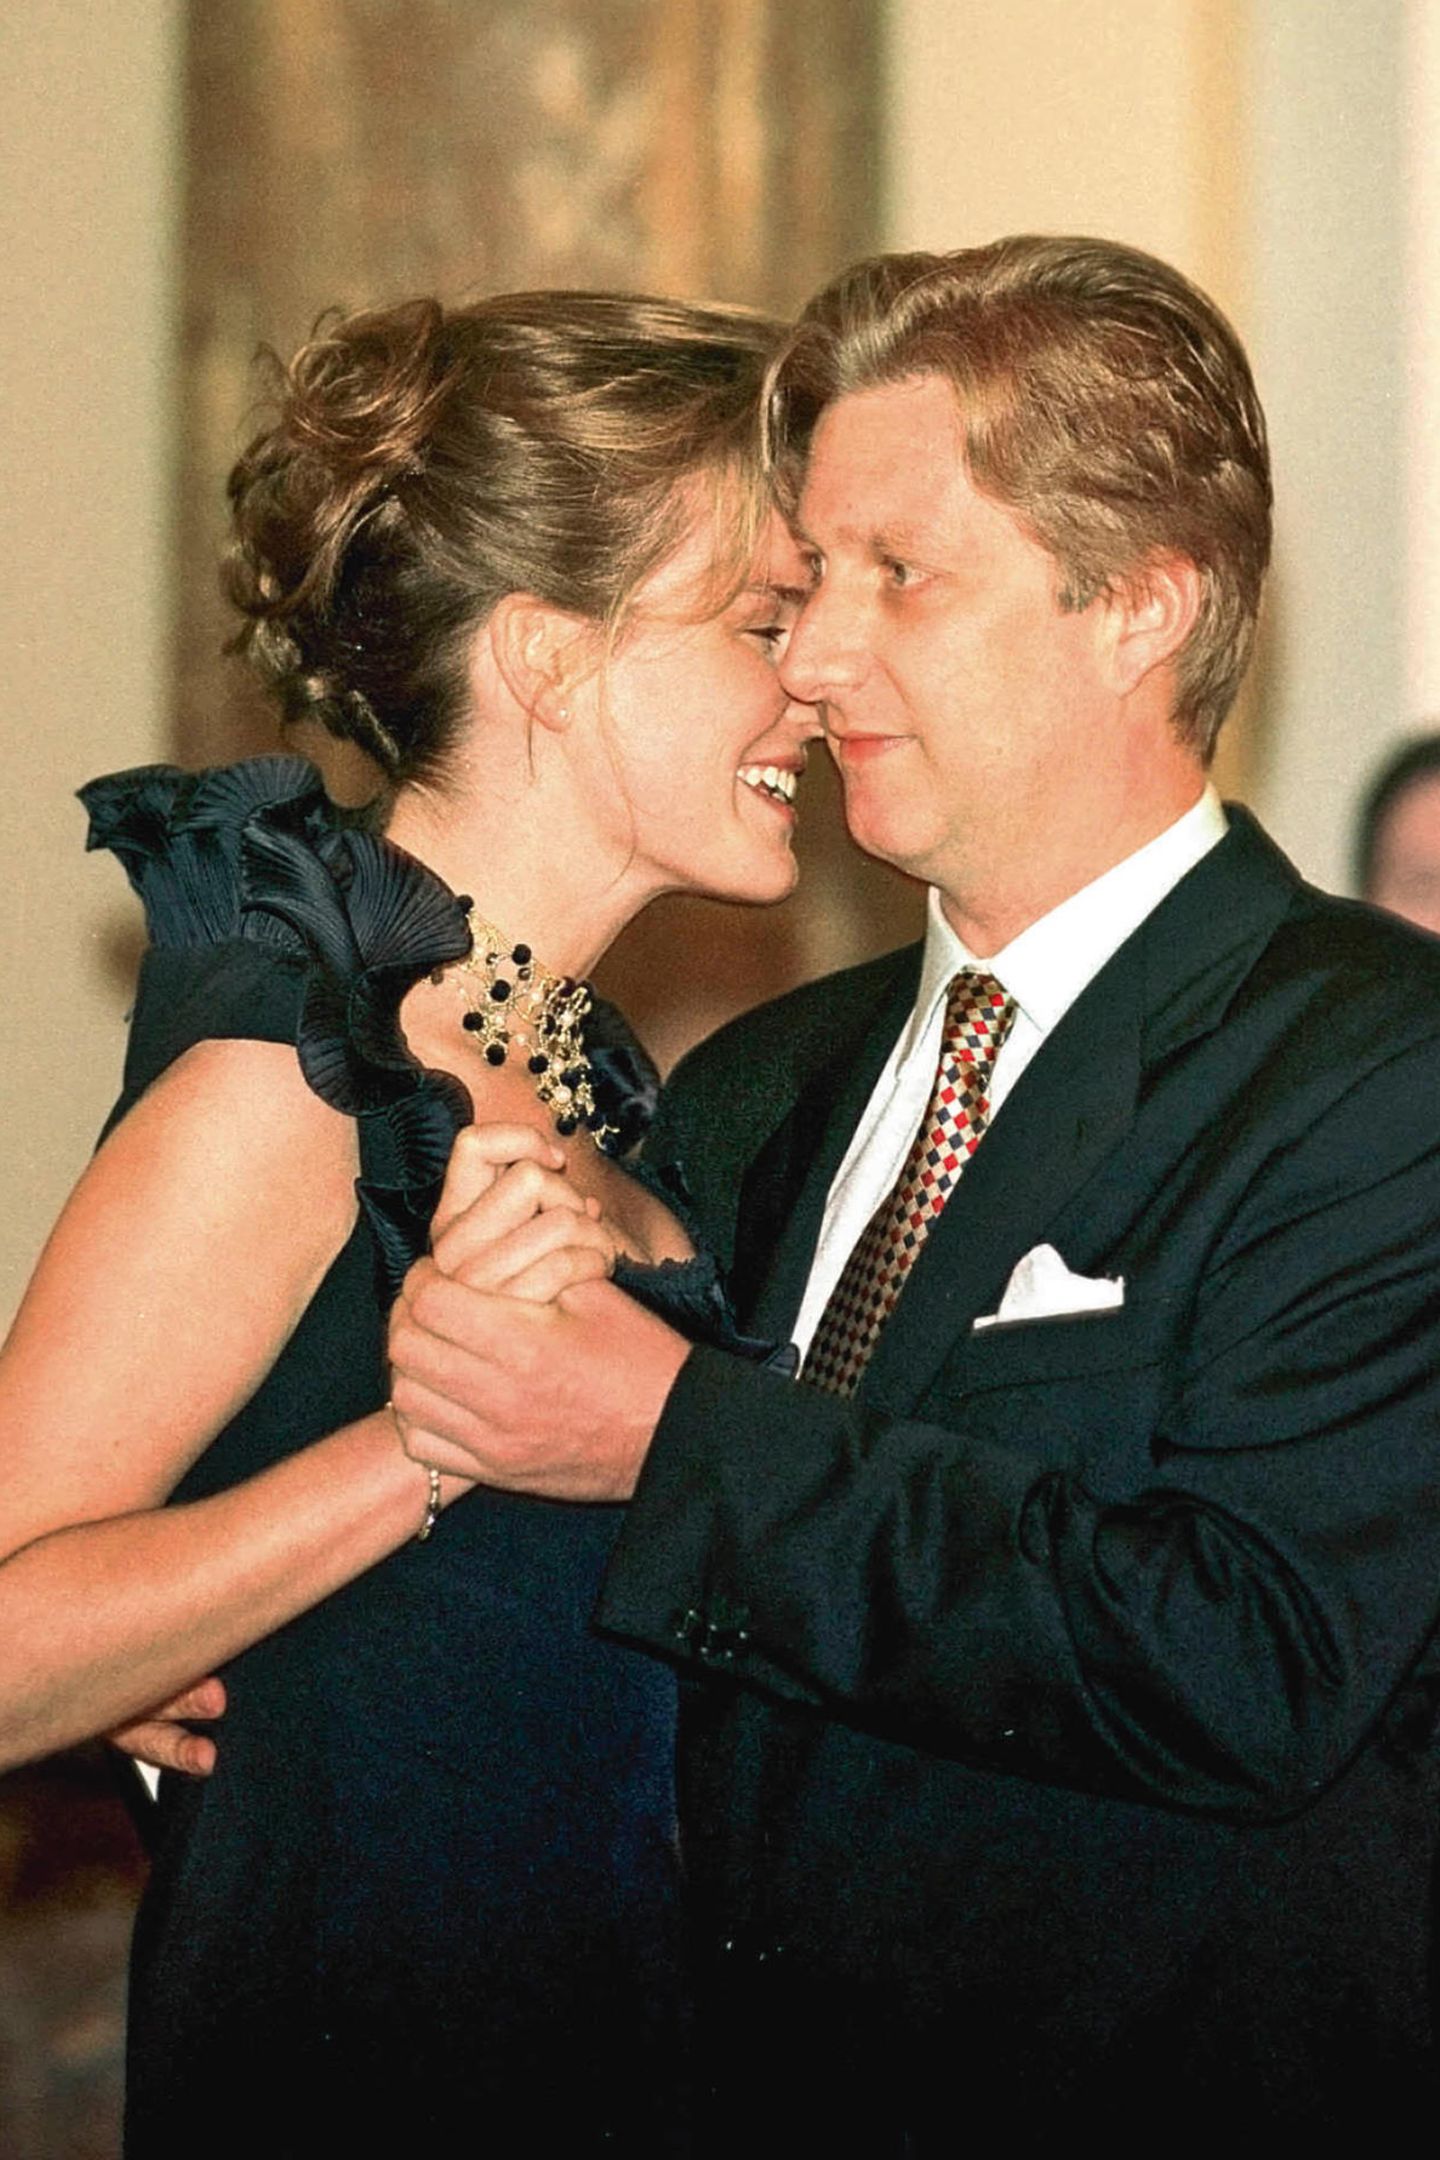 10. September 1999: Königin Mathilde und König Philippe von Belgien  Am 10. September 1999 verlobt sich der damalige Kronprinz Philippe mit Mathilde d'Udekem d'Acoz. Am 4. Dezember folgt die Hochzeit. Das Paar bekommt vier Kinder. 2013 wird Philippe König der Belgier.   